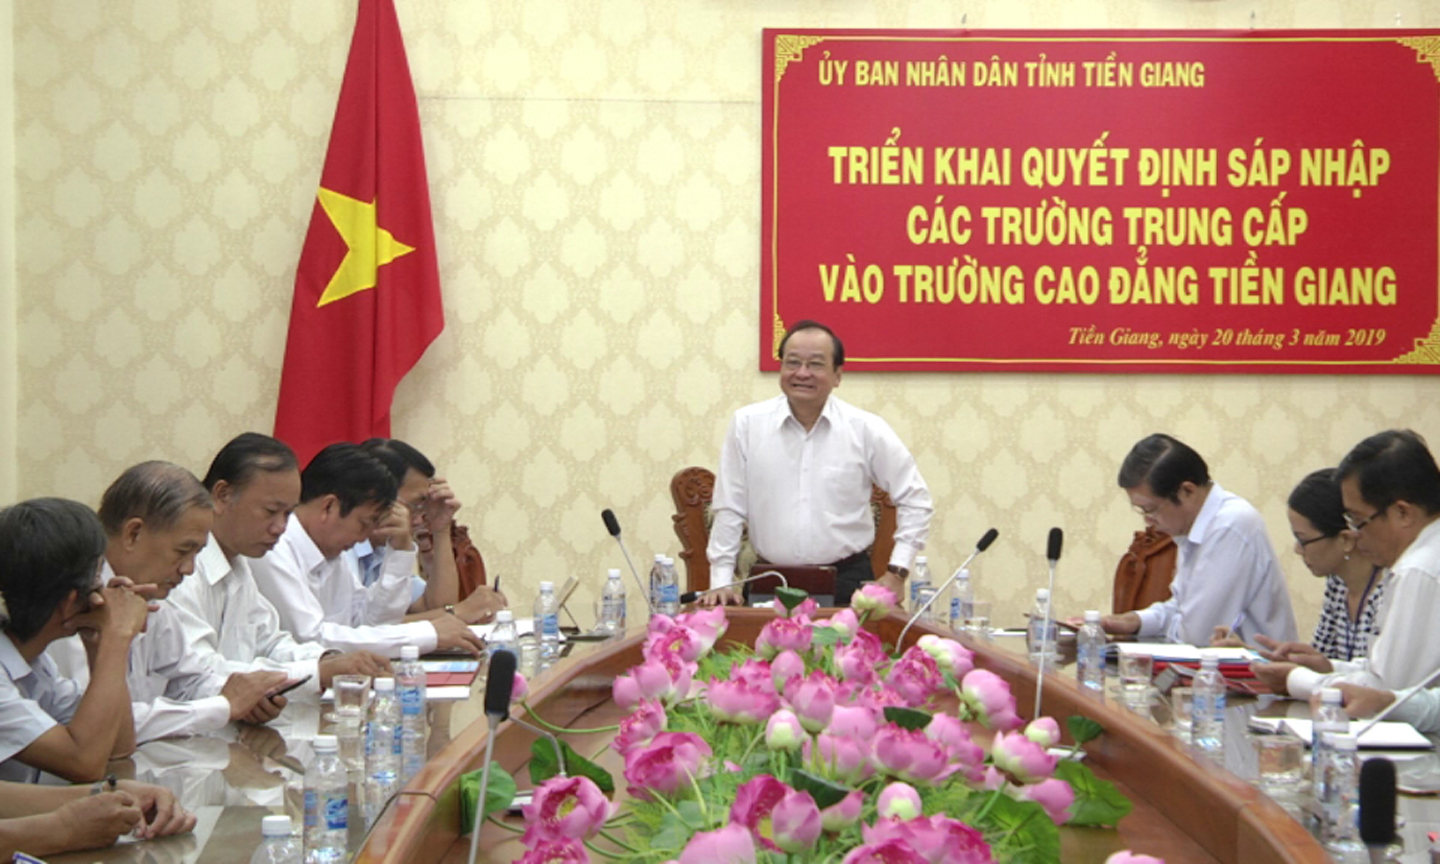 Đồng chí Trần Thanh Đức phát biểu tại buổi triển khai quyết định  sáp nhập các trường.